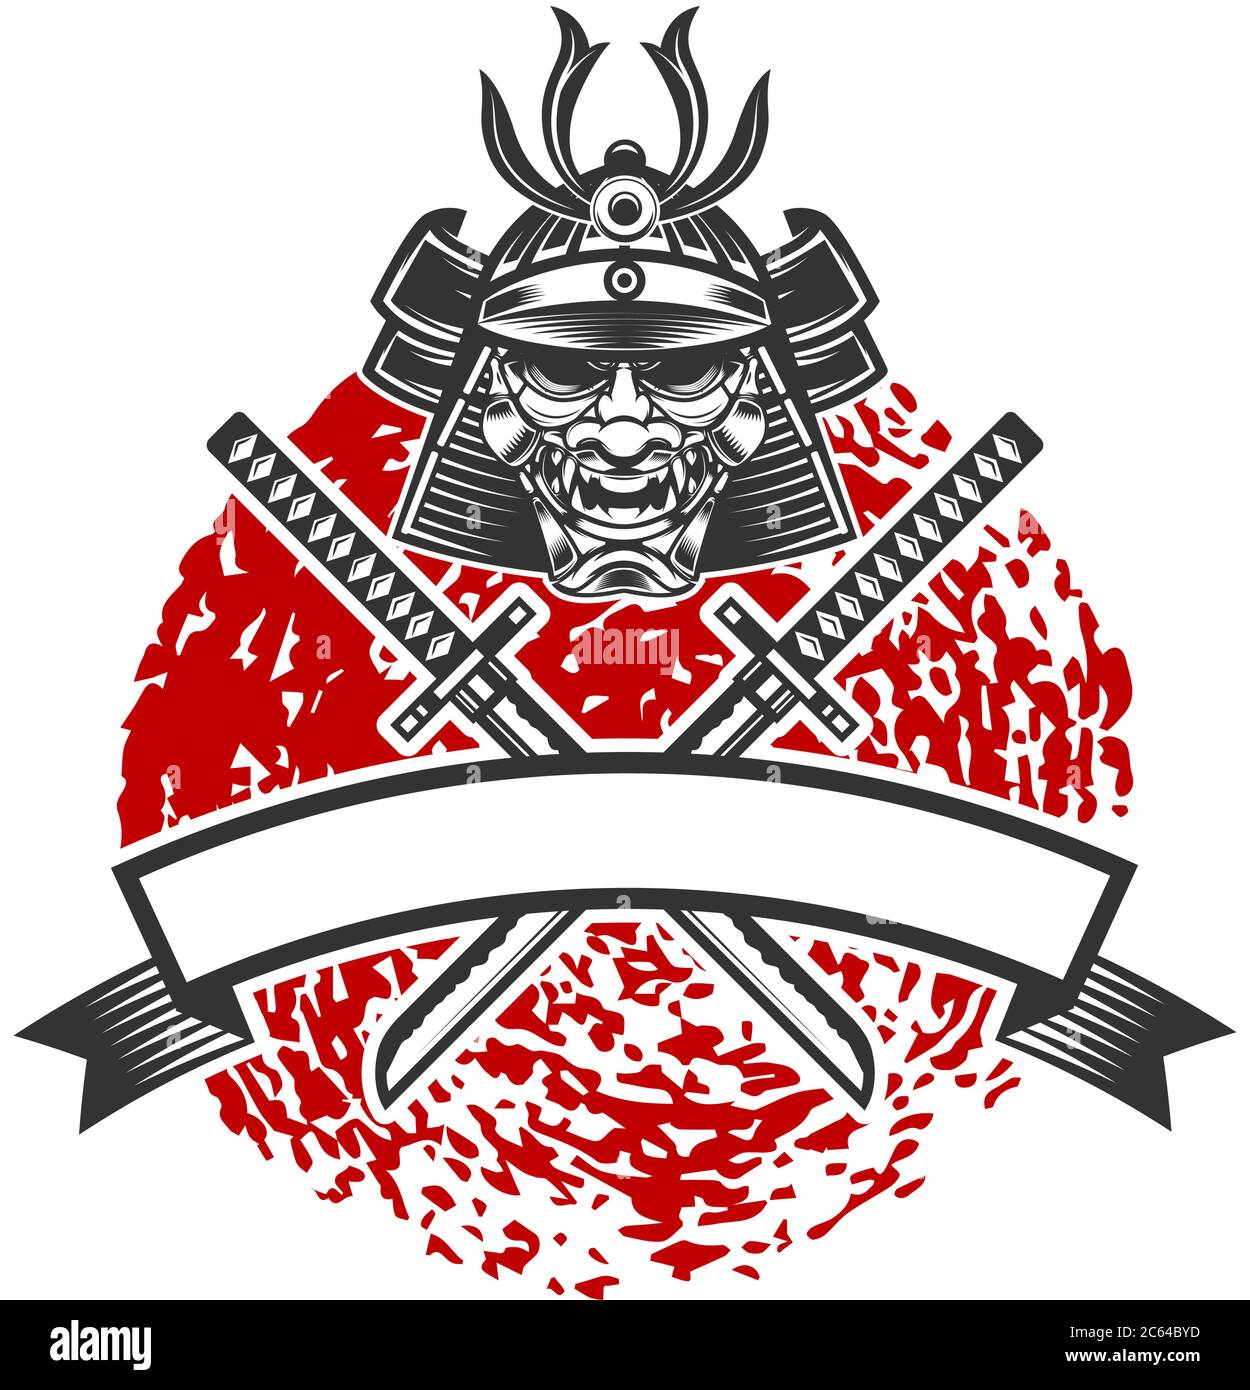 Emblème avec casque samouraï et épées de katana croisées. Élément de design pour logo, étiquette, affiche, affiche, t-shirt. Illustration vectorielle Illustration de Vecteur